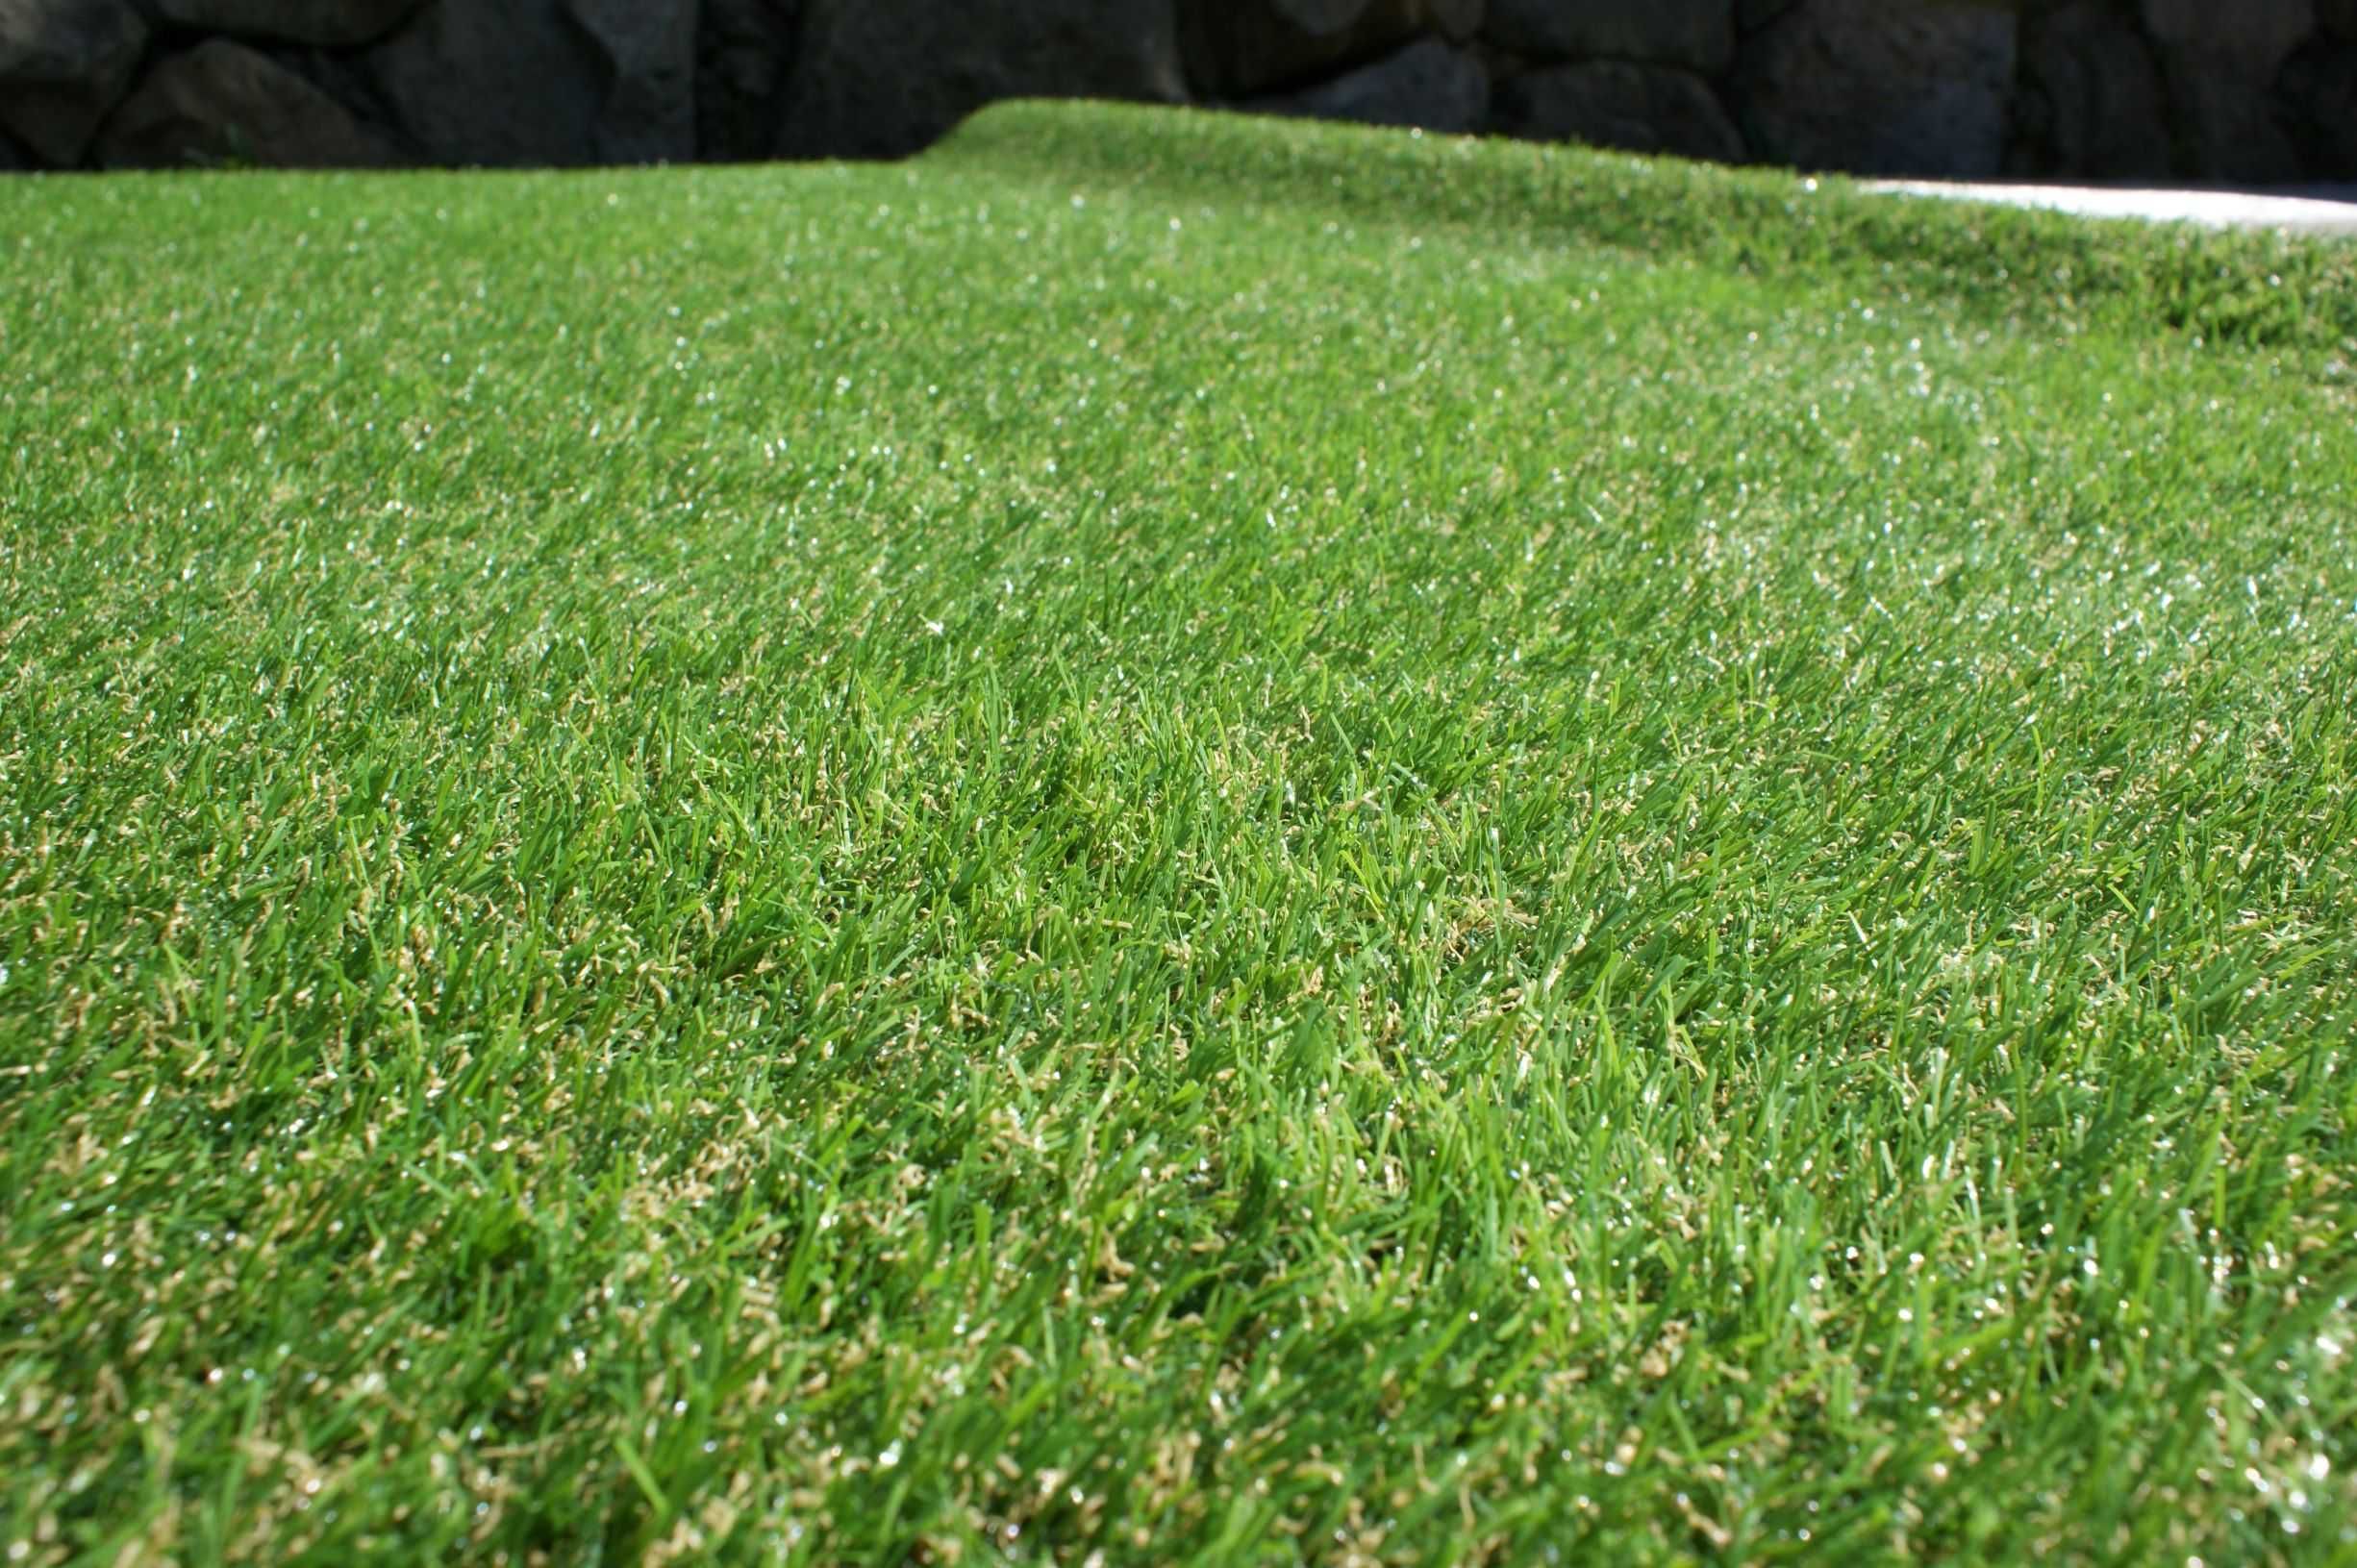 sztuczna trawa szer 133cm wysokość włosa 2,2cm  Jenifer